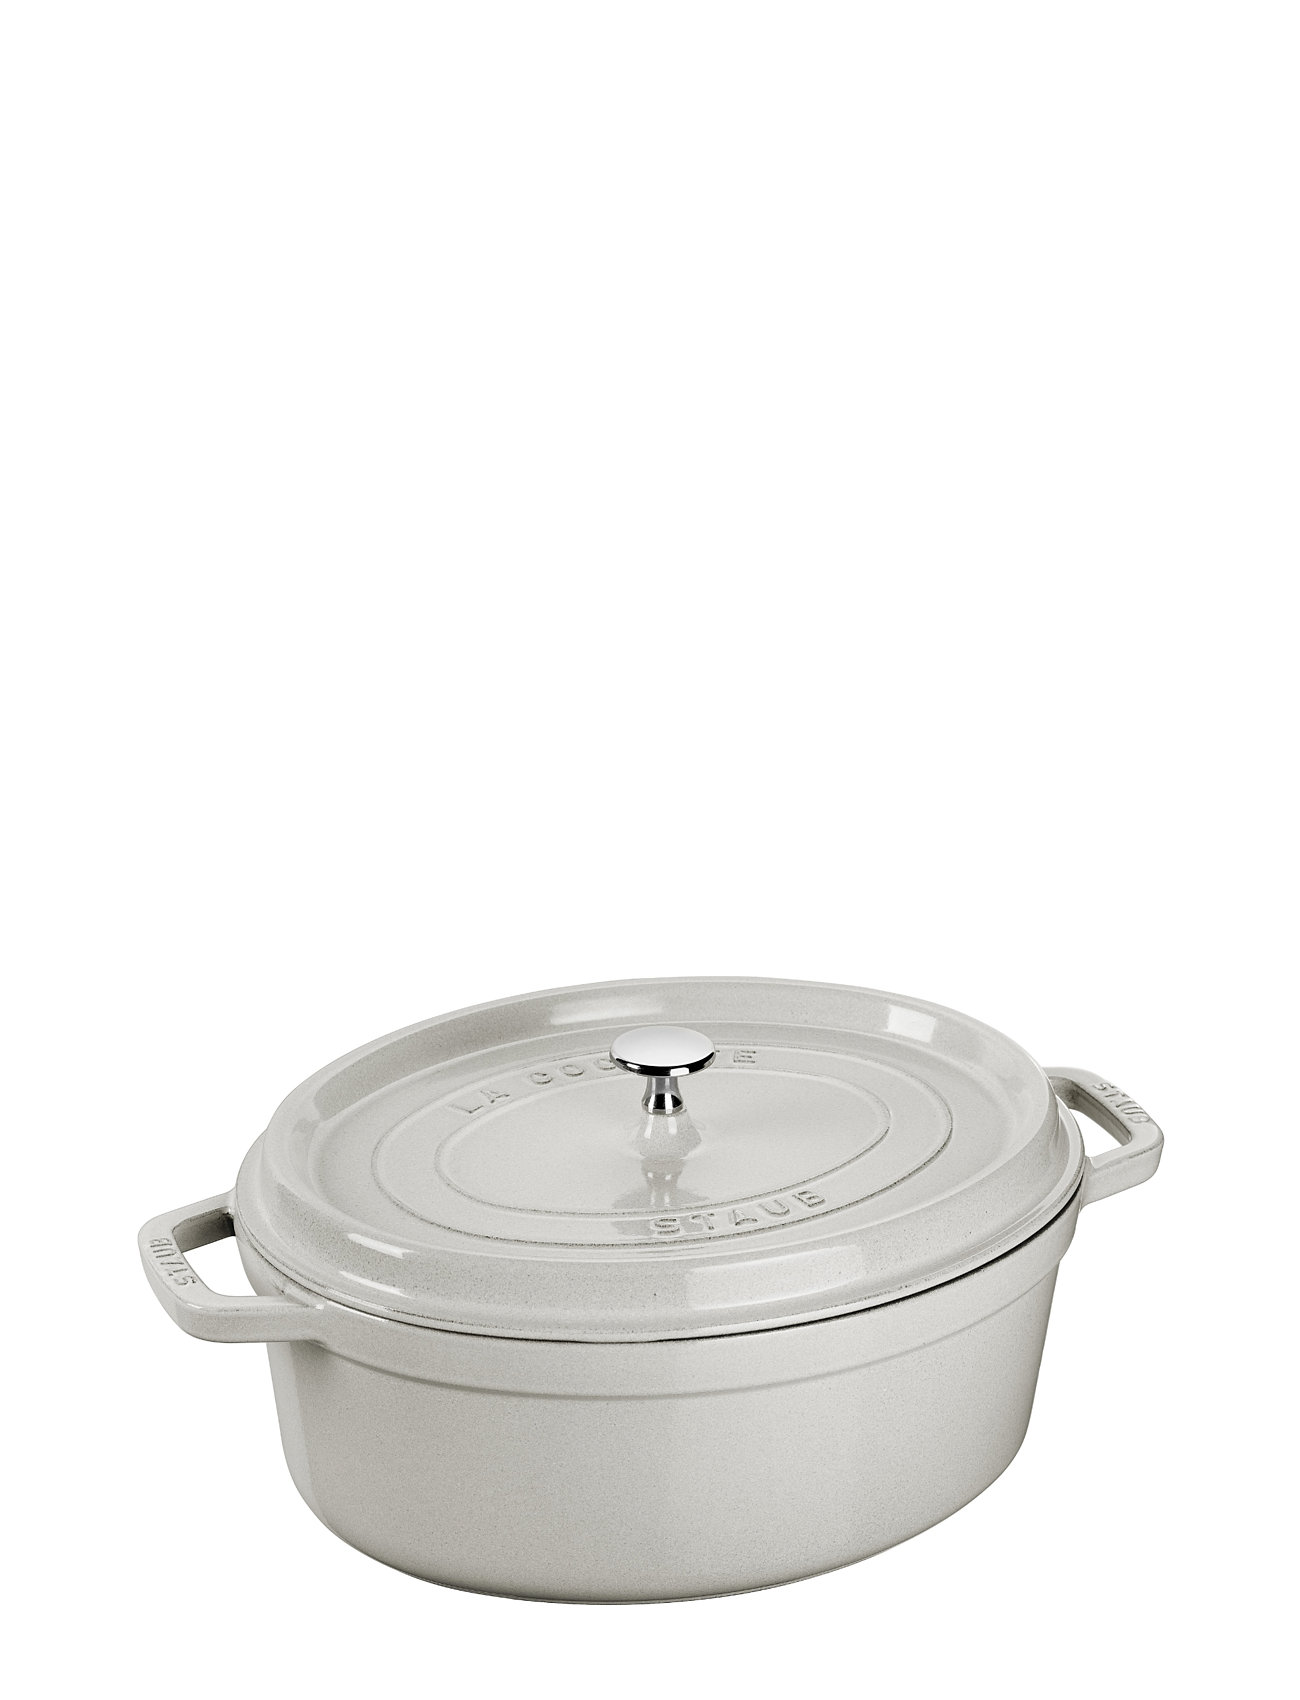 La Cocotte - Oval Cast Iron Home Kitchen Pots & Pans Casserole Dishes Grey STAUB